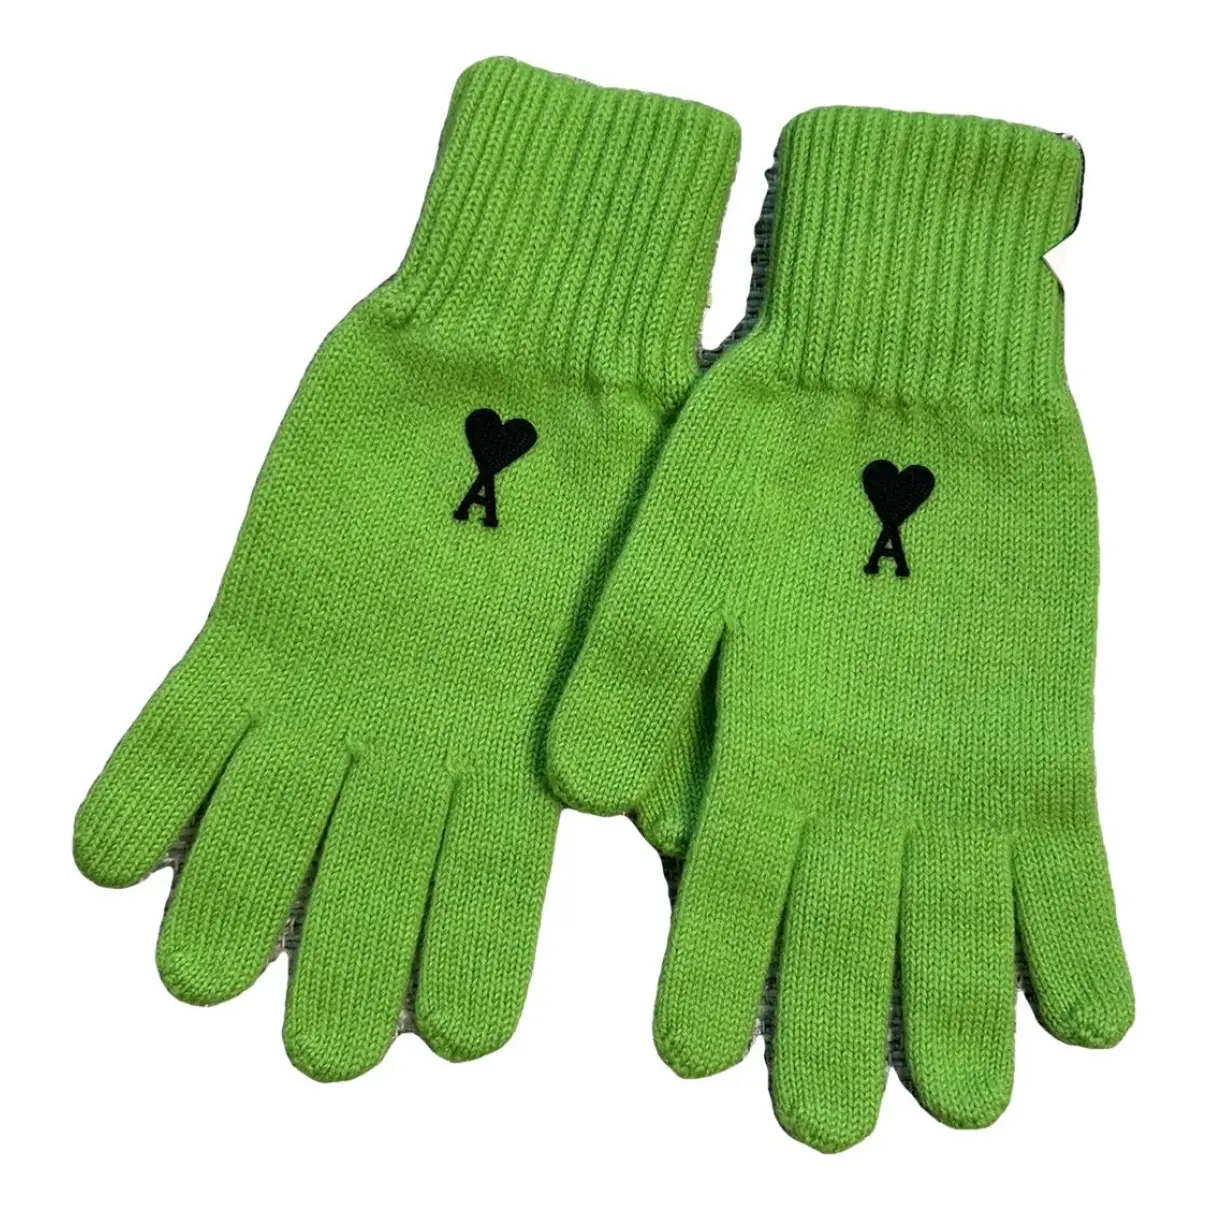 Wool gloves